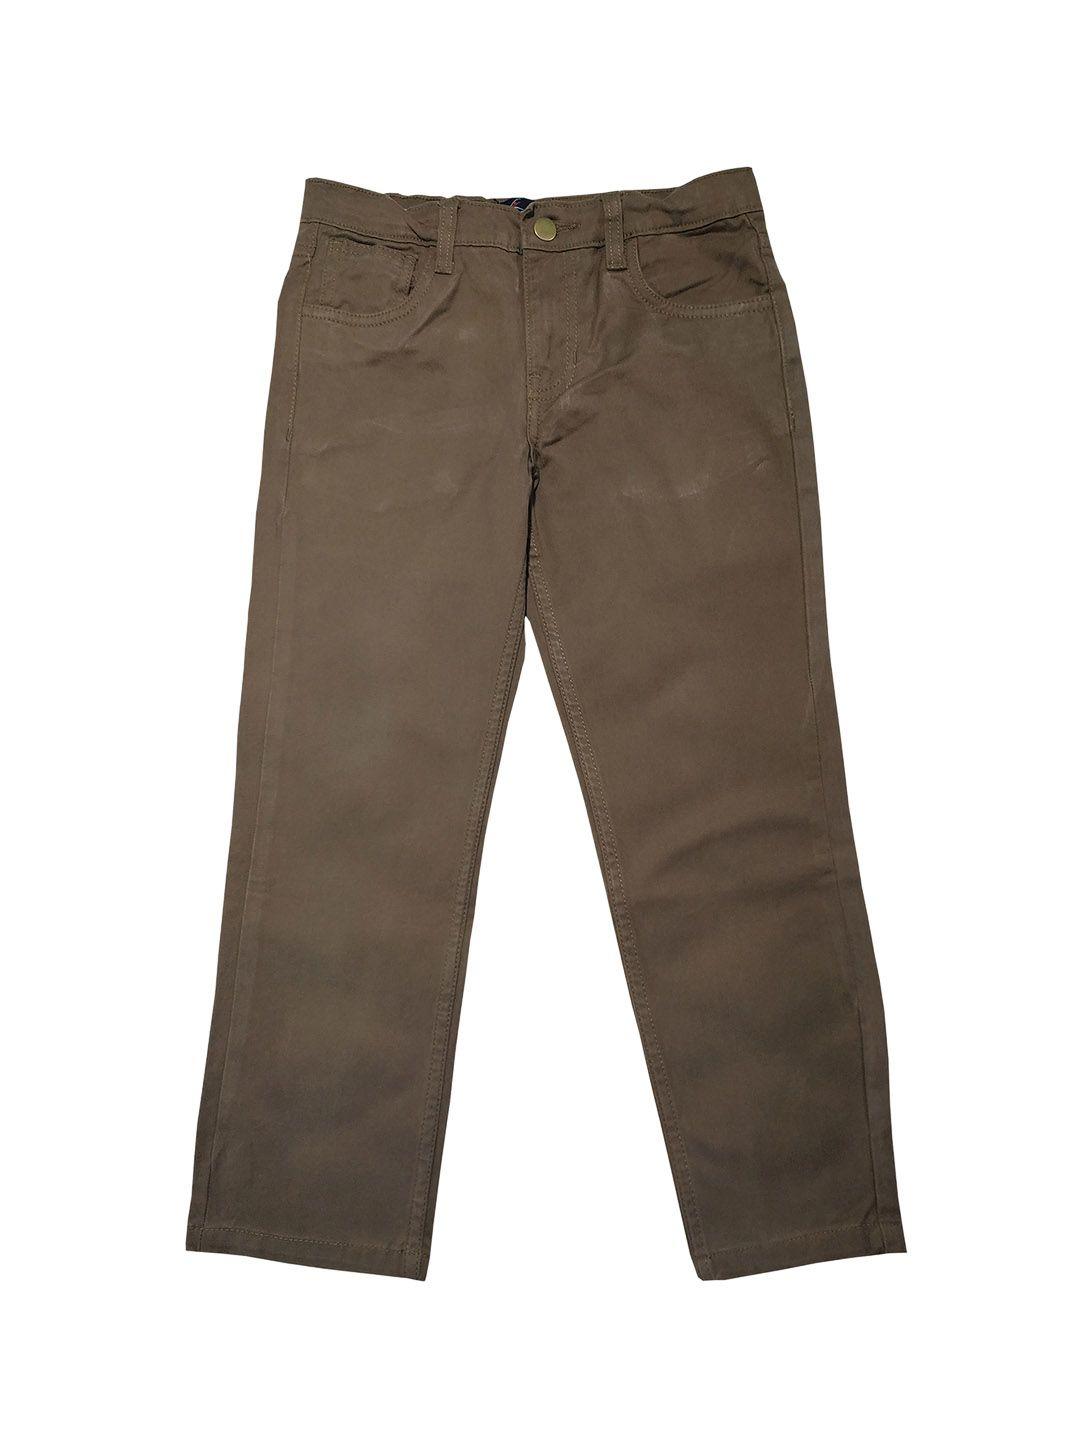 kiddopanti boys brown regular fit solid regular trousers